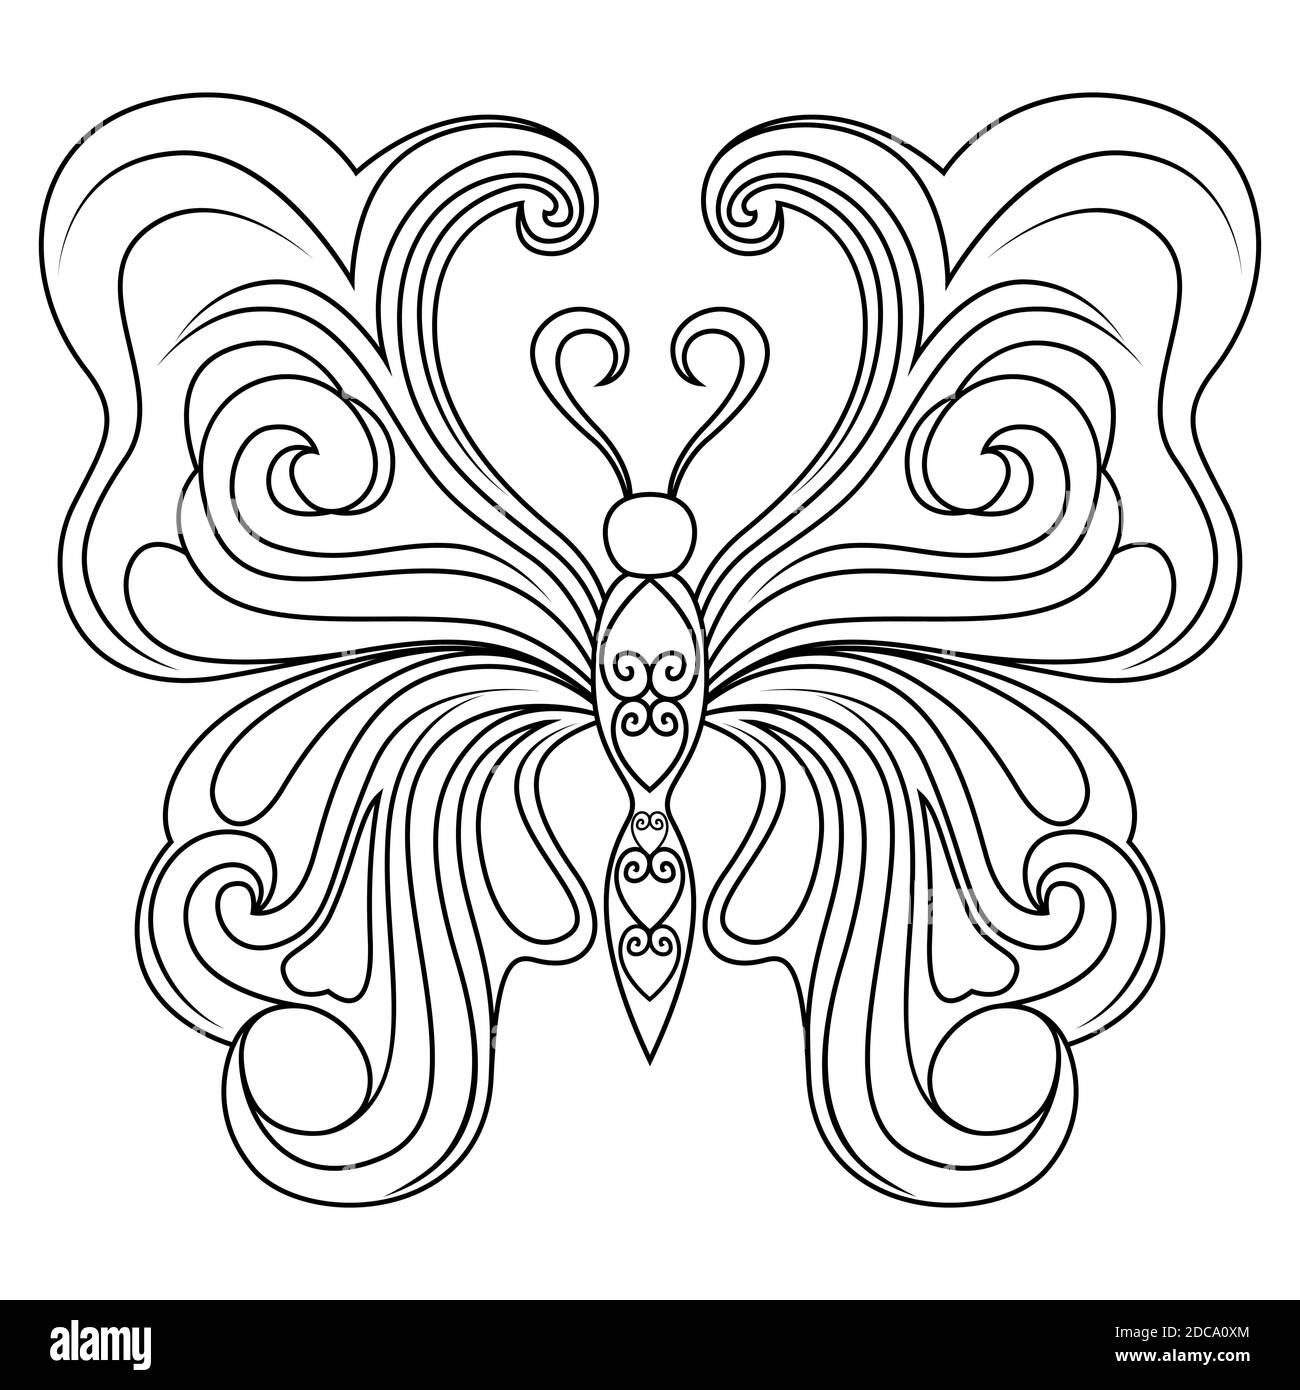 Dekorative schwarze Schablonen von schönen Schmetterling isoliert auf dem weißen Hintergrund, Handzeichnung Vektor-Illustration Stock Vektor